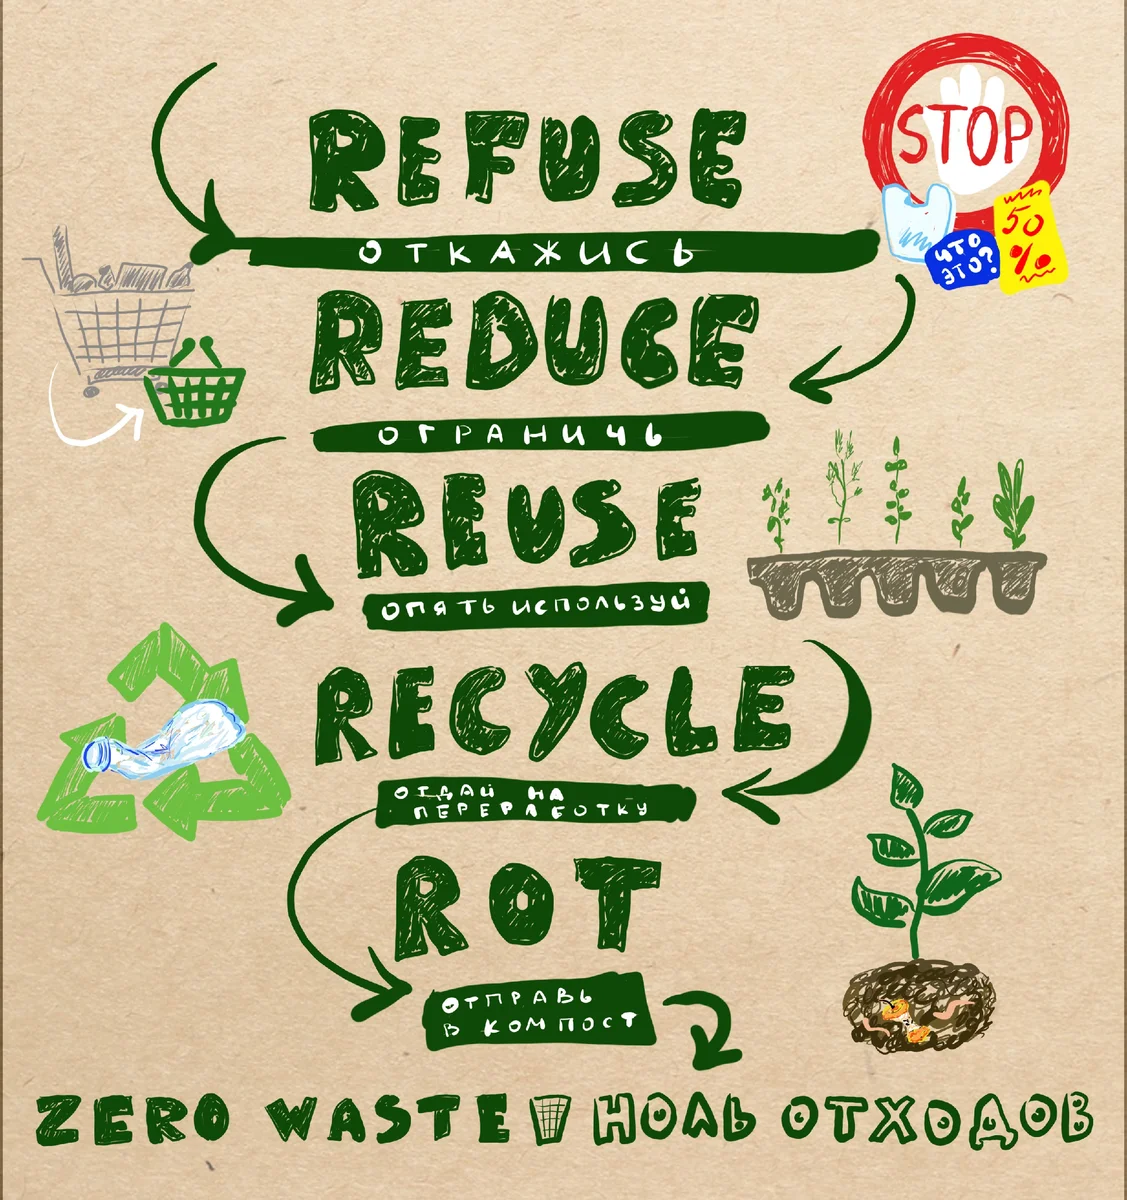 Концепция Zero Waste (Ноль отходов) стала известной после того, как Беа Джонсон описала в своей книге способы сокращения образования отходов в домашних условиях.